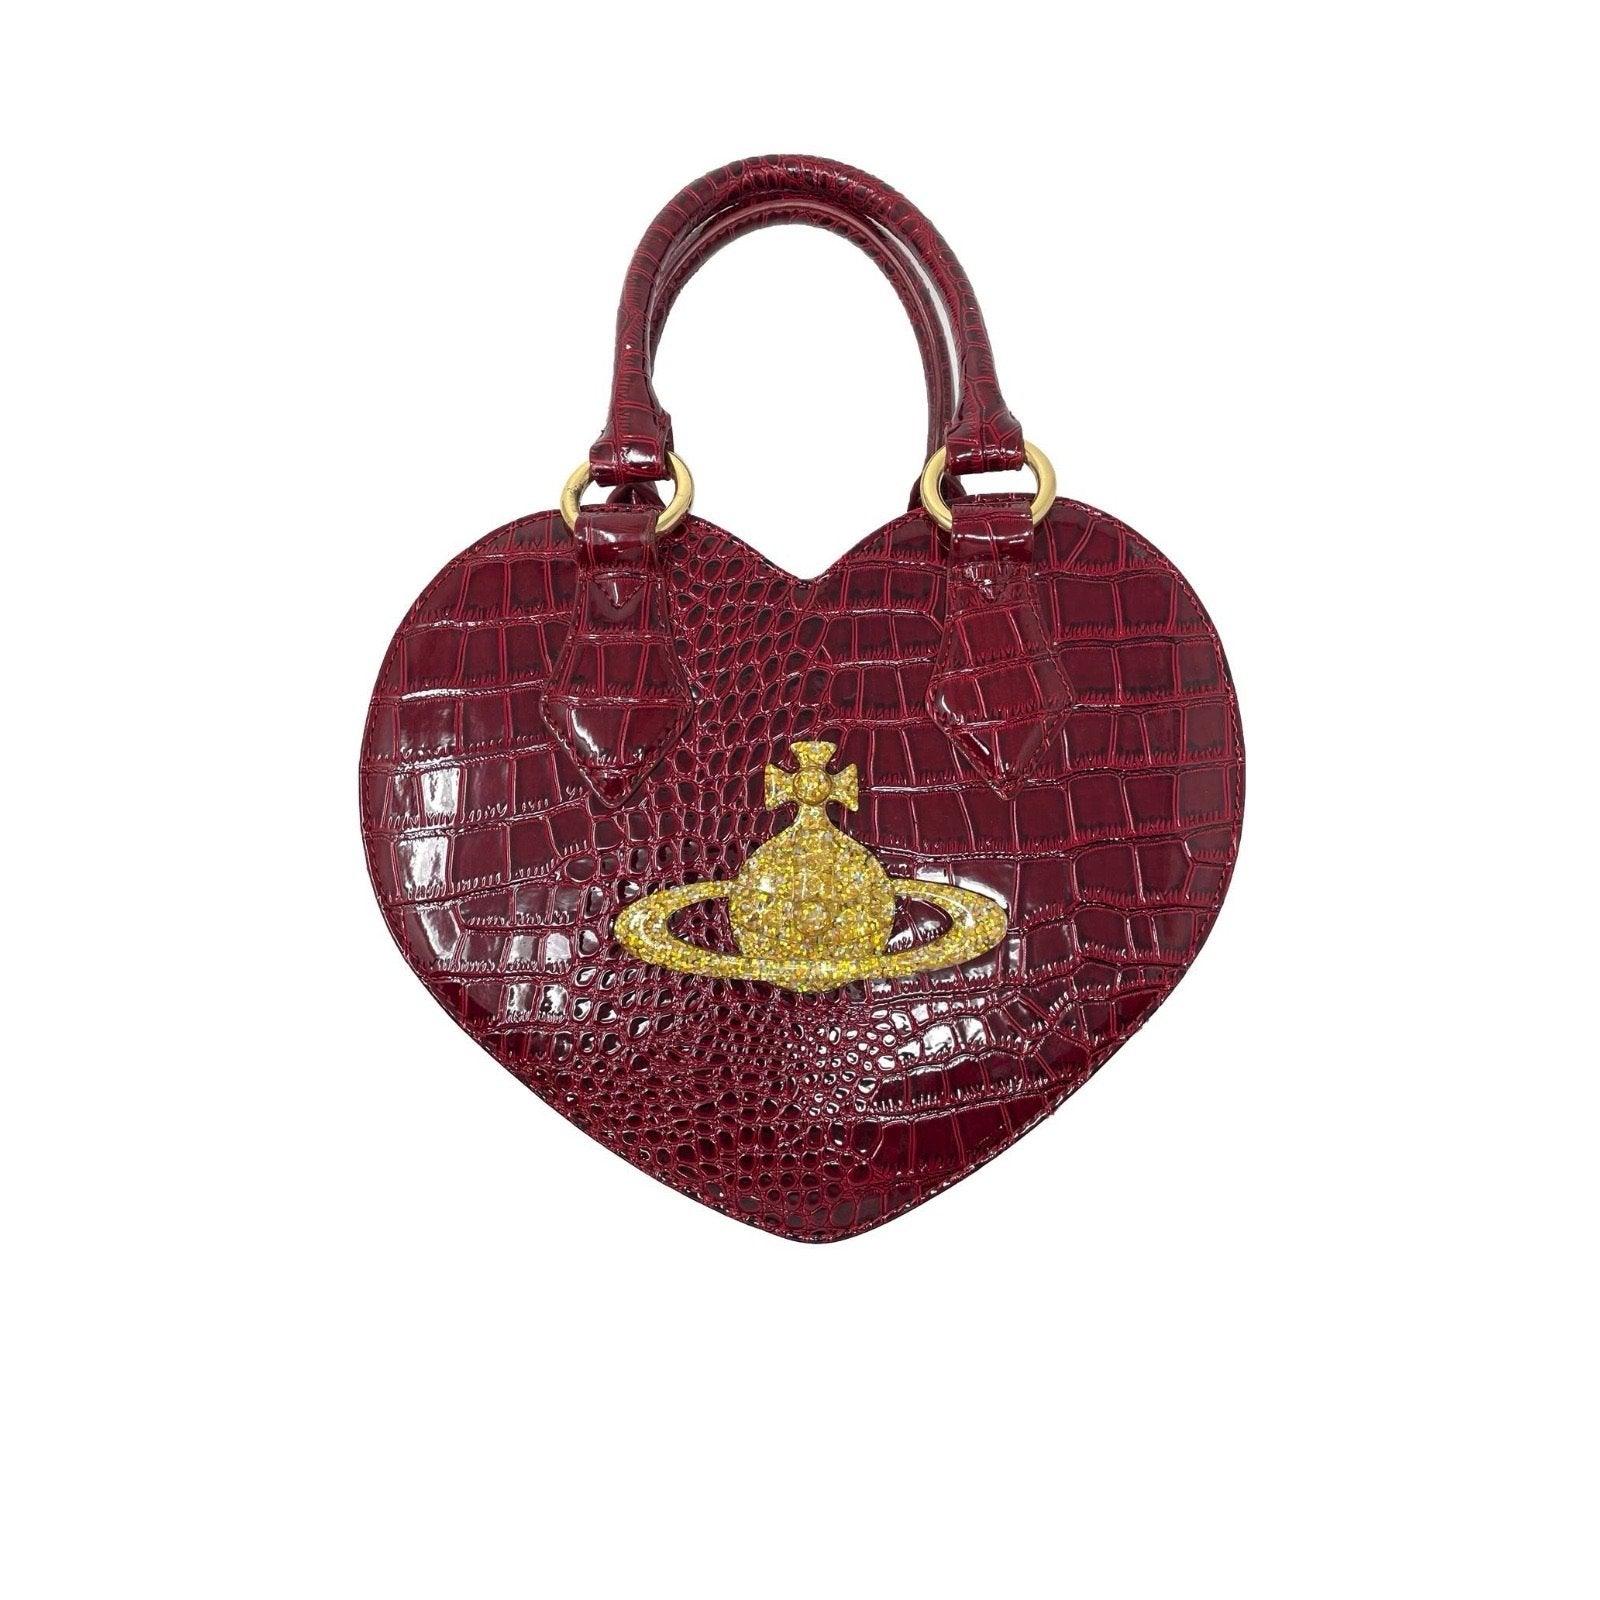 Vivienne Westwood Burgundy Heart Bag - Handbags